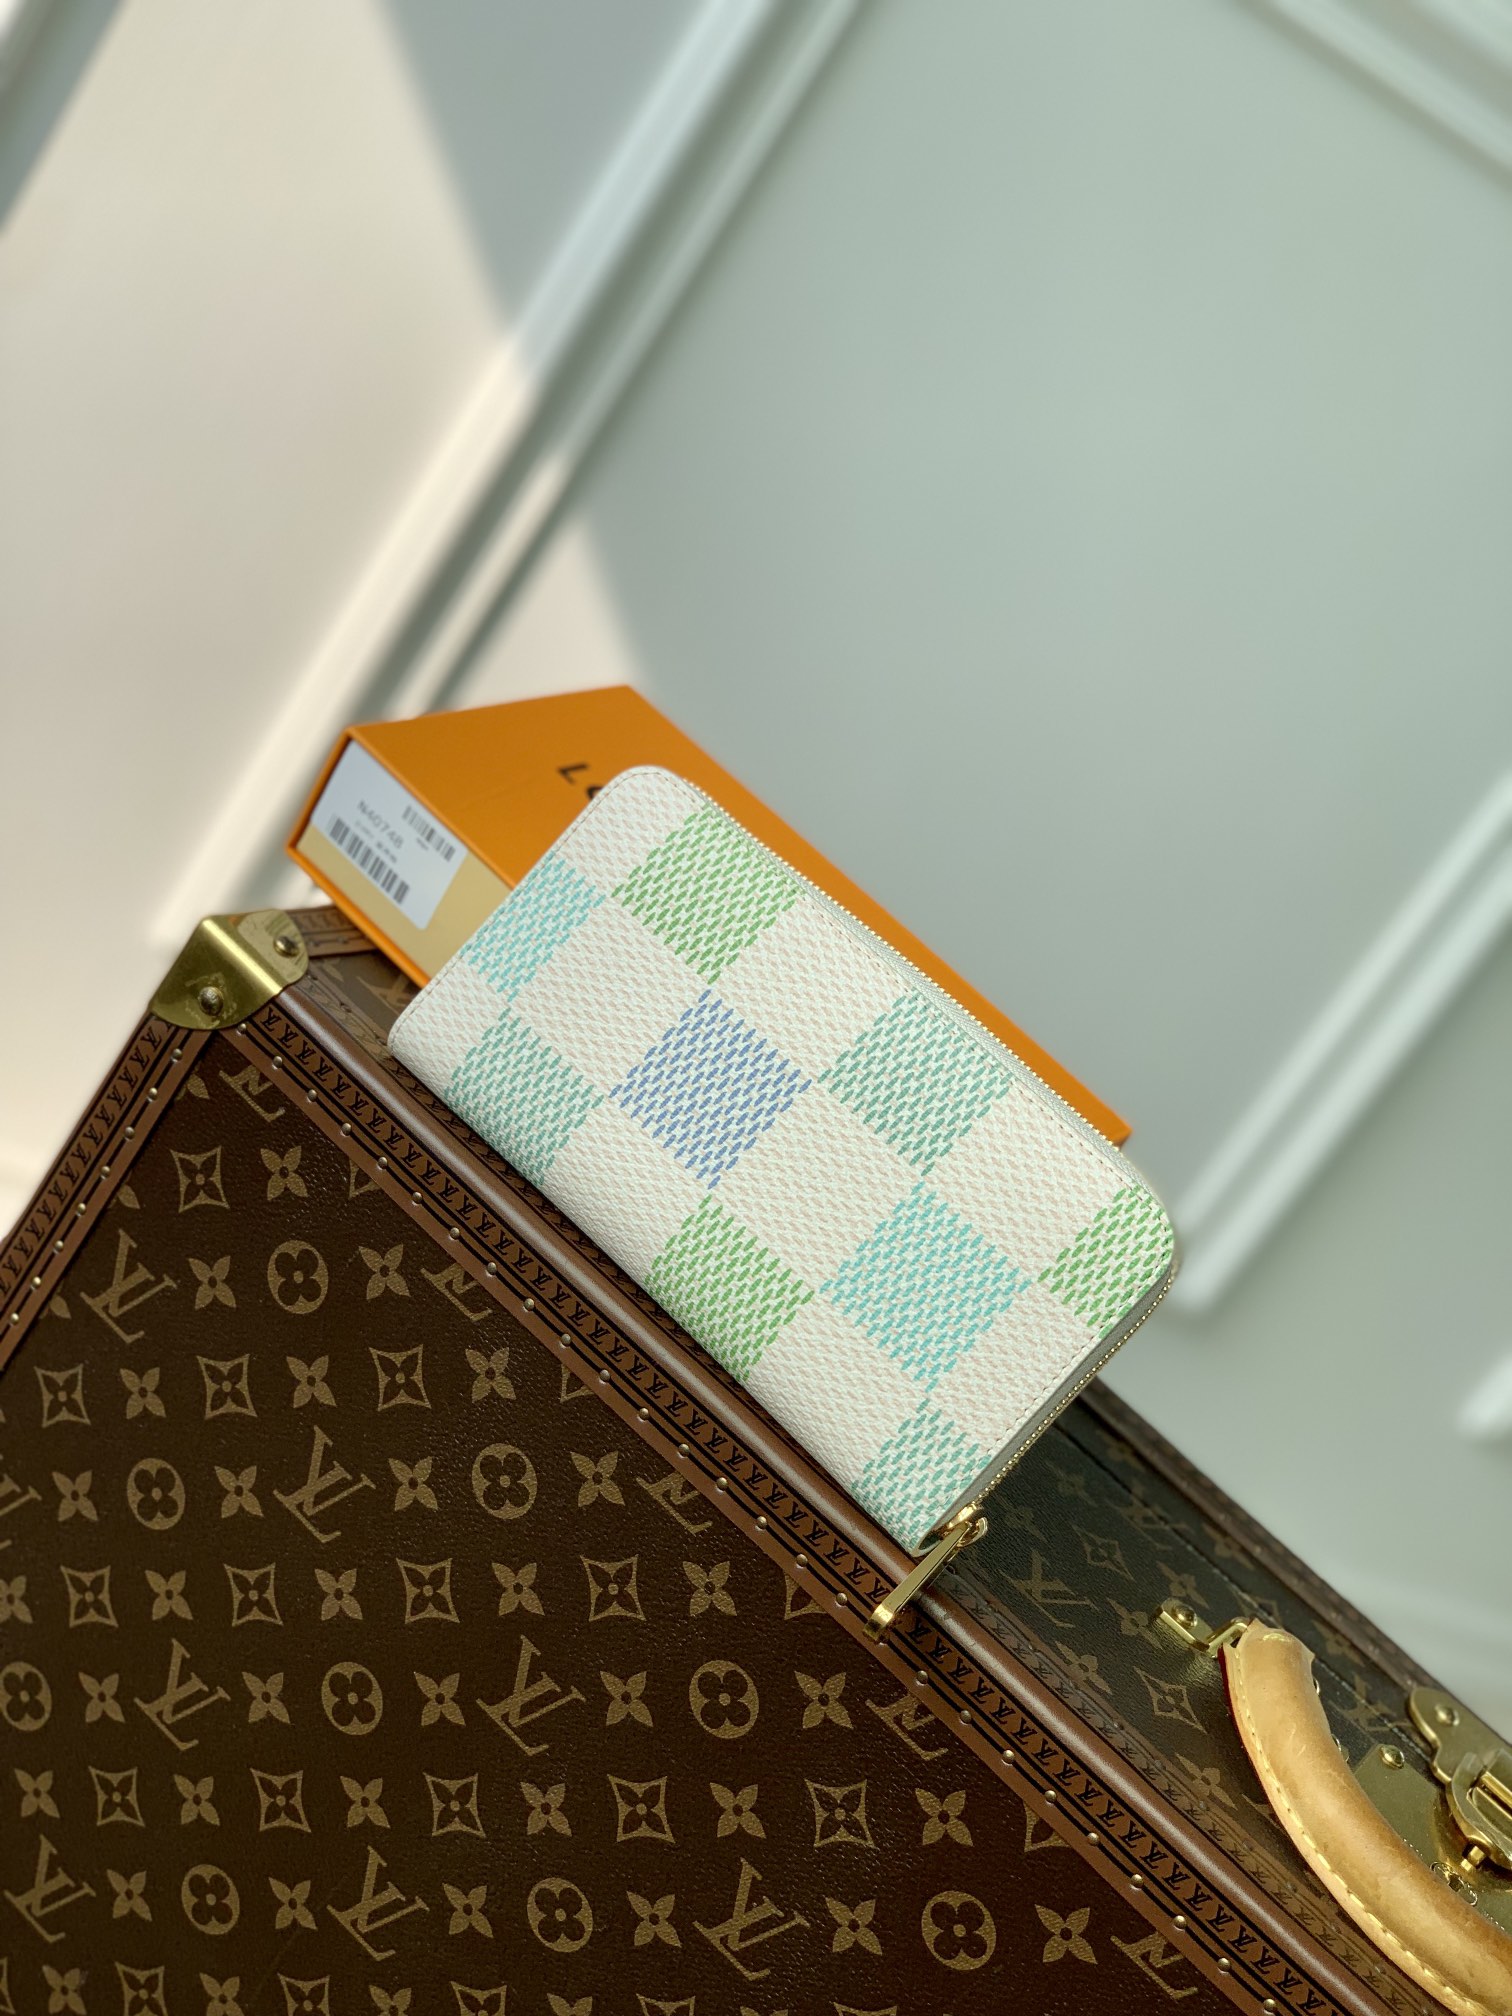 N40748 蓝方格damiericious 系列的 zippie wallet 用充满魅力的彩色重新诠释了damiercanvas 特别版的单品 纤细的轮廓和圆形拉链开合式特征的标志性的钱包 用柔和的颜色使之成为了清新且有女人味的氛围 经过巧妙设计的内部装修 分为可以收纳纸币 卡片 文件的多个公寓 19.5 x 10.5 x 2.5 cm 